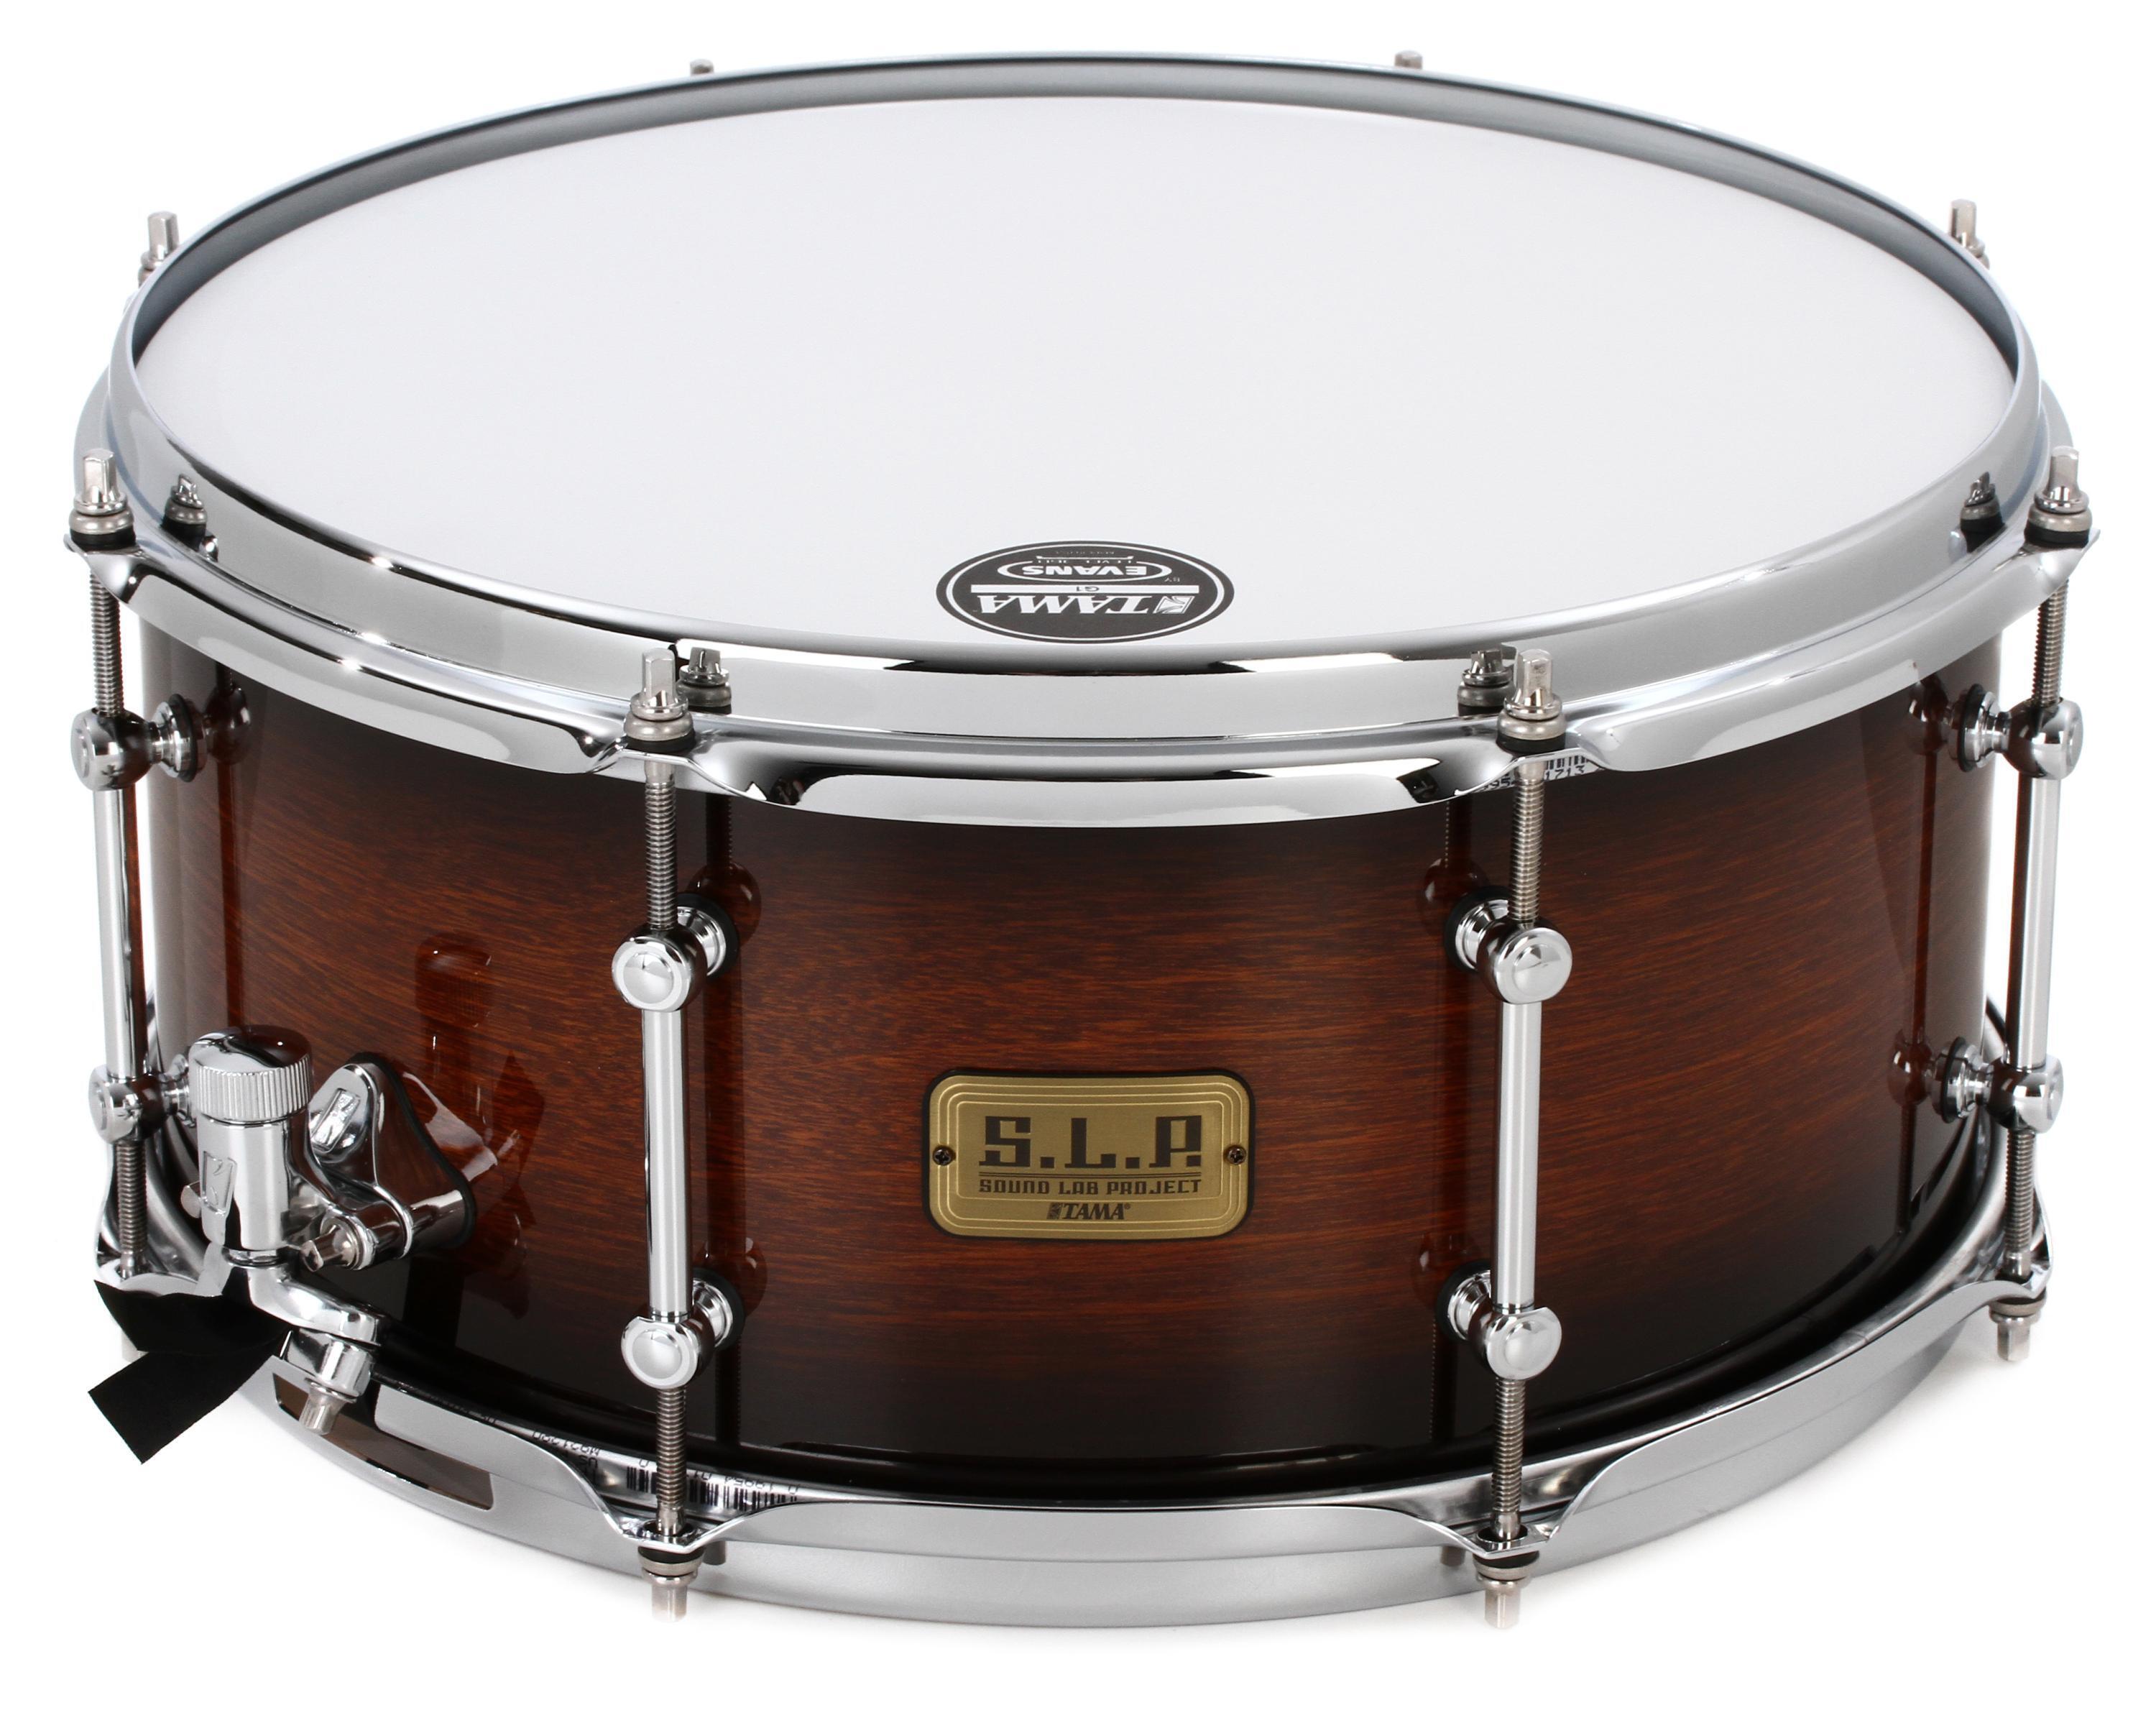 Tama S.L.P. Dynamic Kapur Snare Drum - 6.5 x 14 inch - Black Kapur